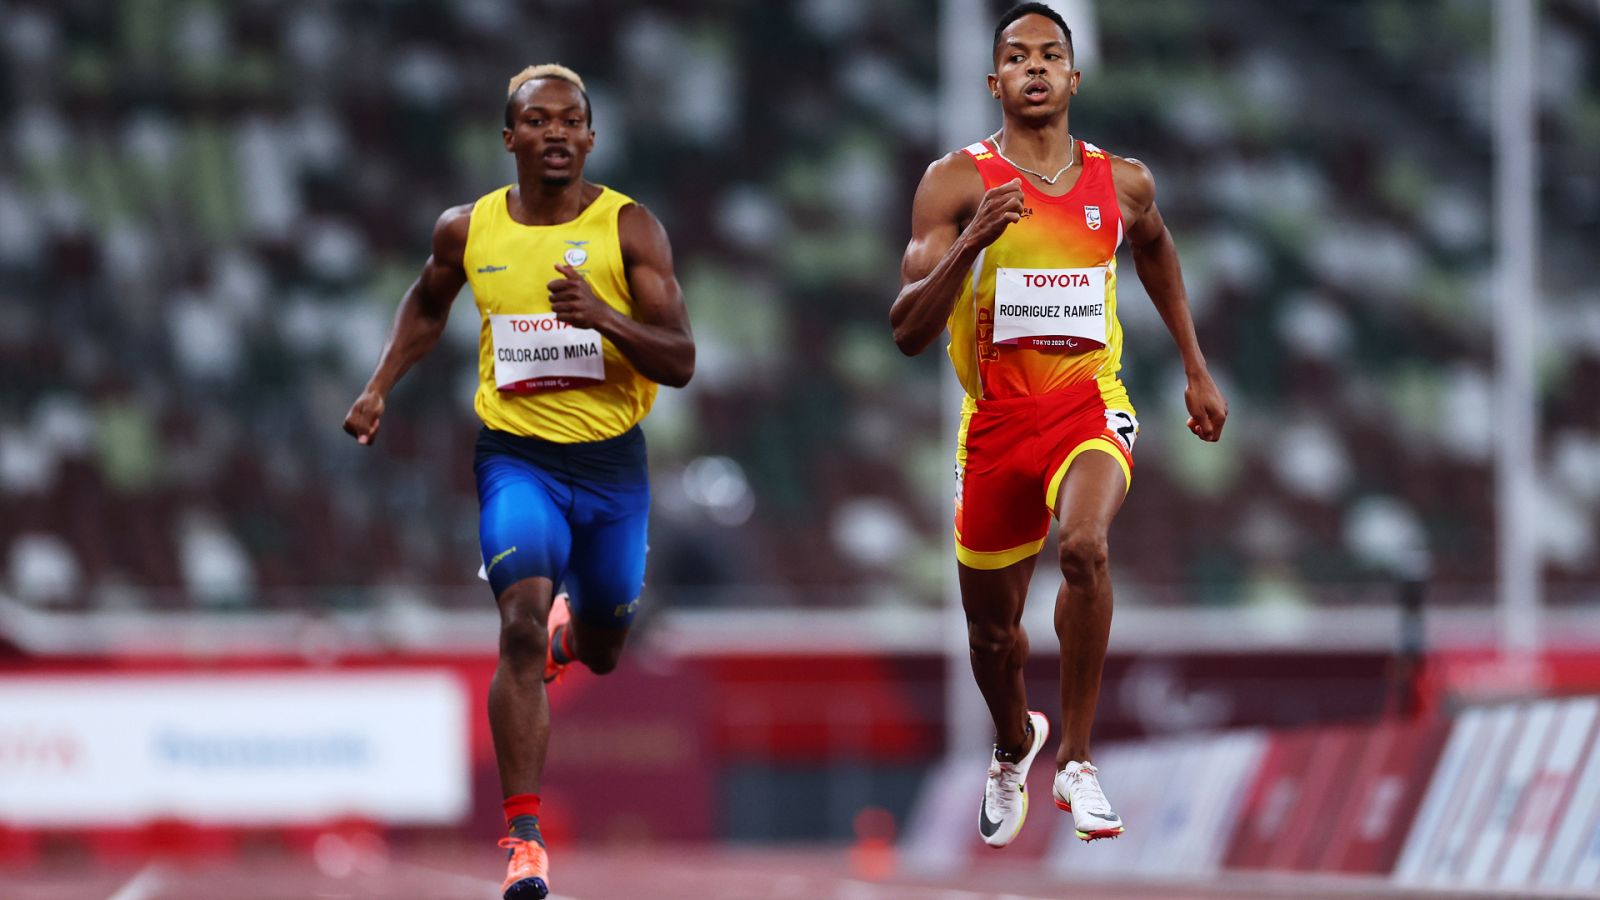 Atletismo: Semifinales de 400 m lisos - Deliber Rodríguez - ver ahora